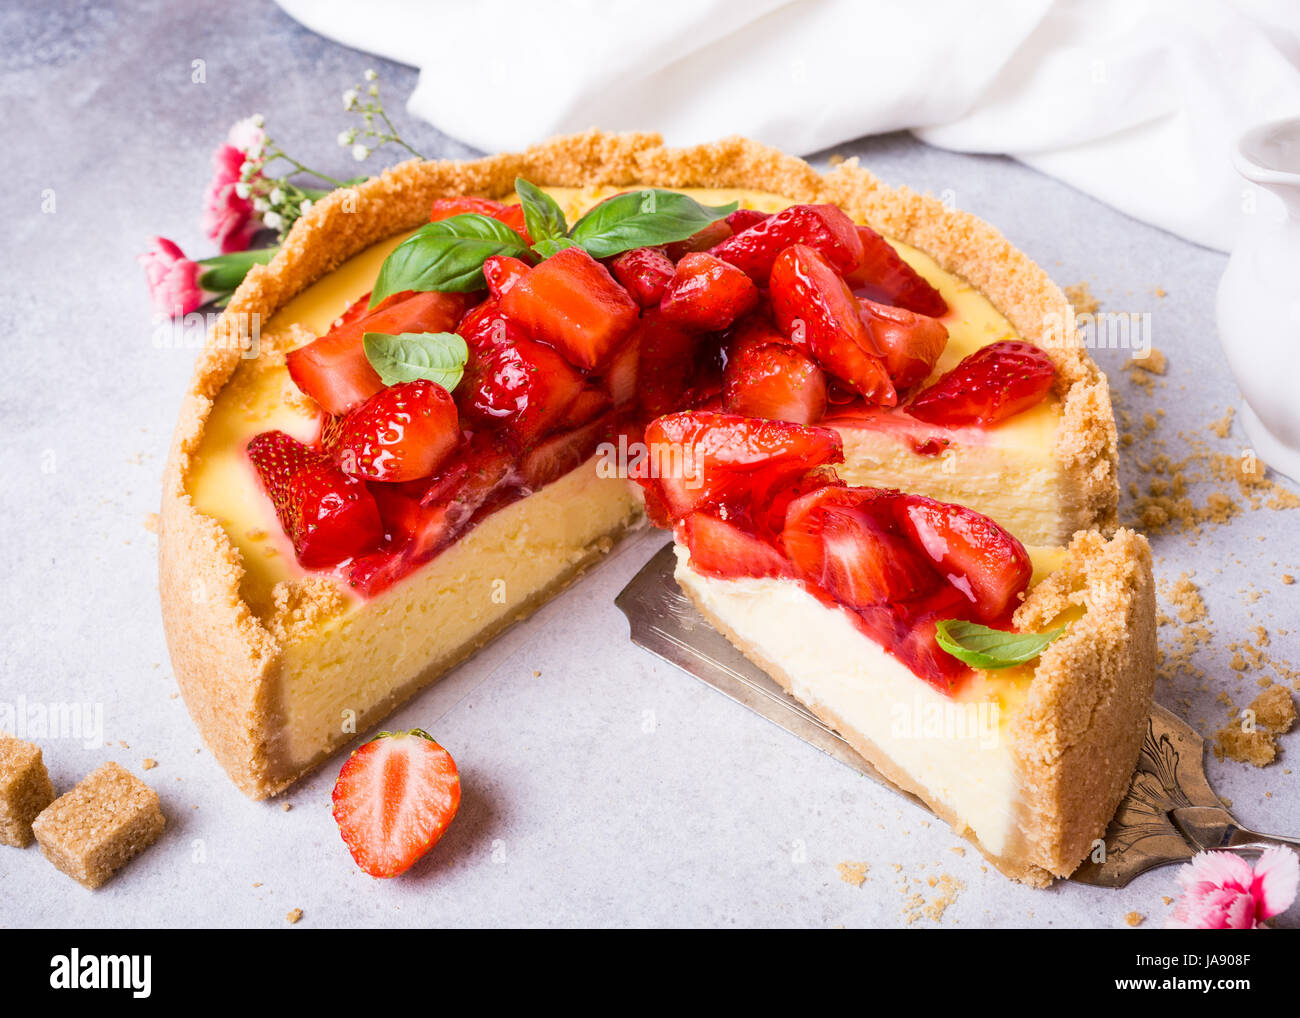 Gâteau au fromage aux fraises et fleurs Banque D'Images